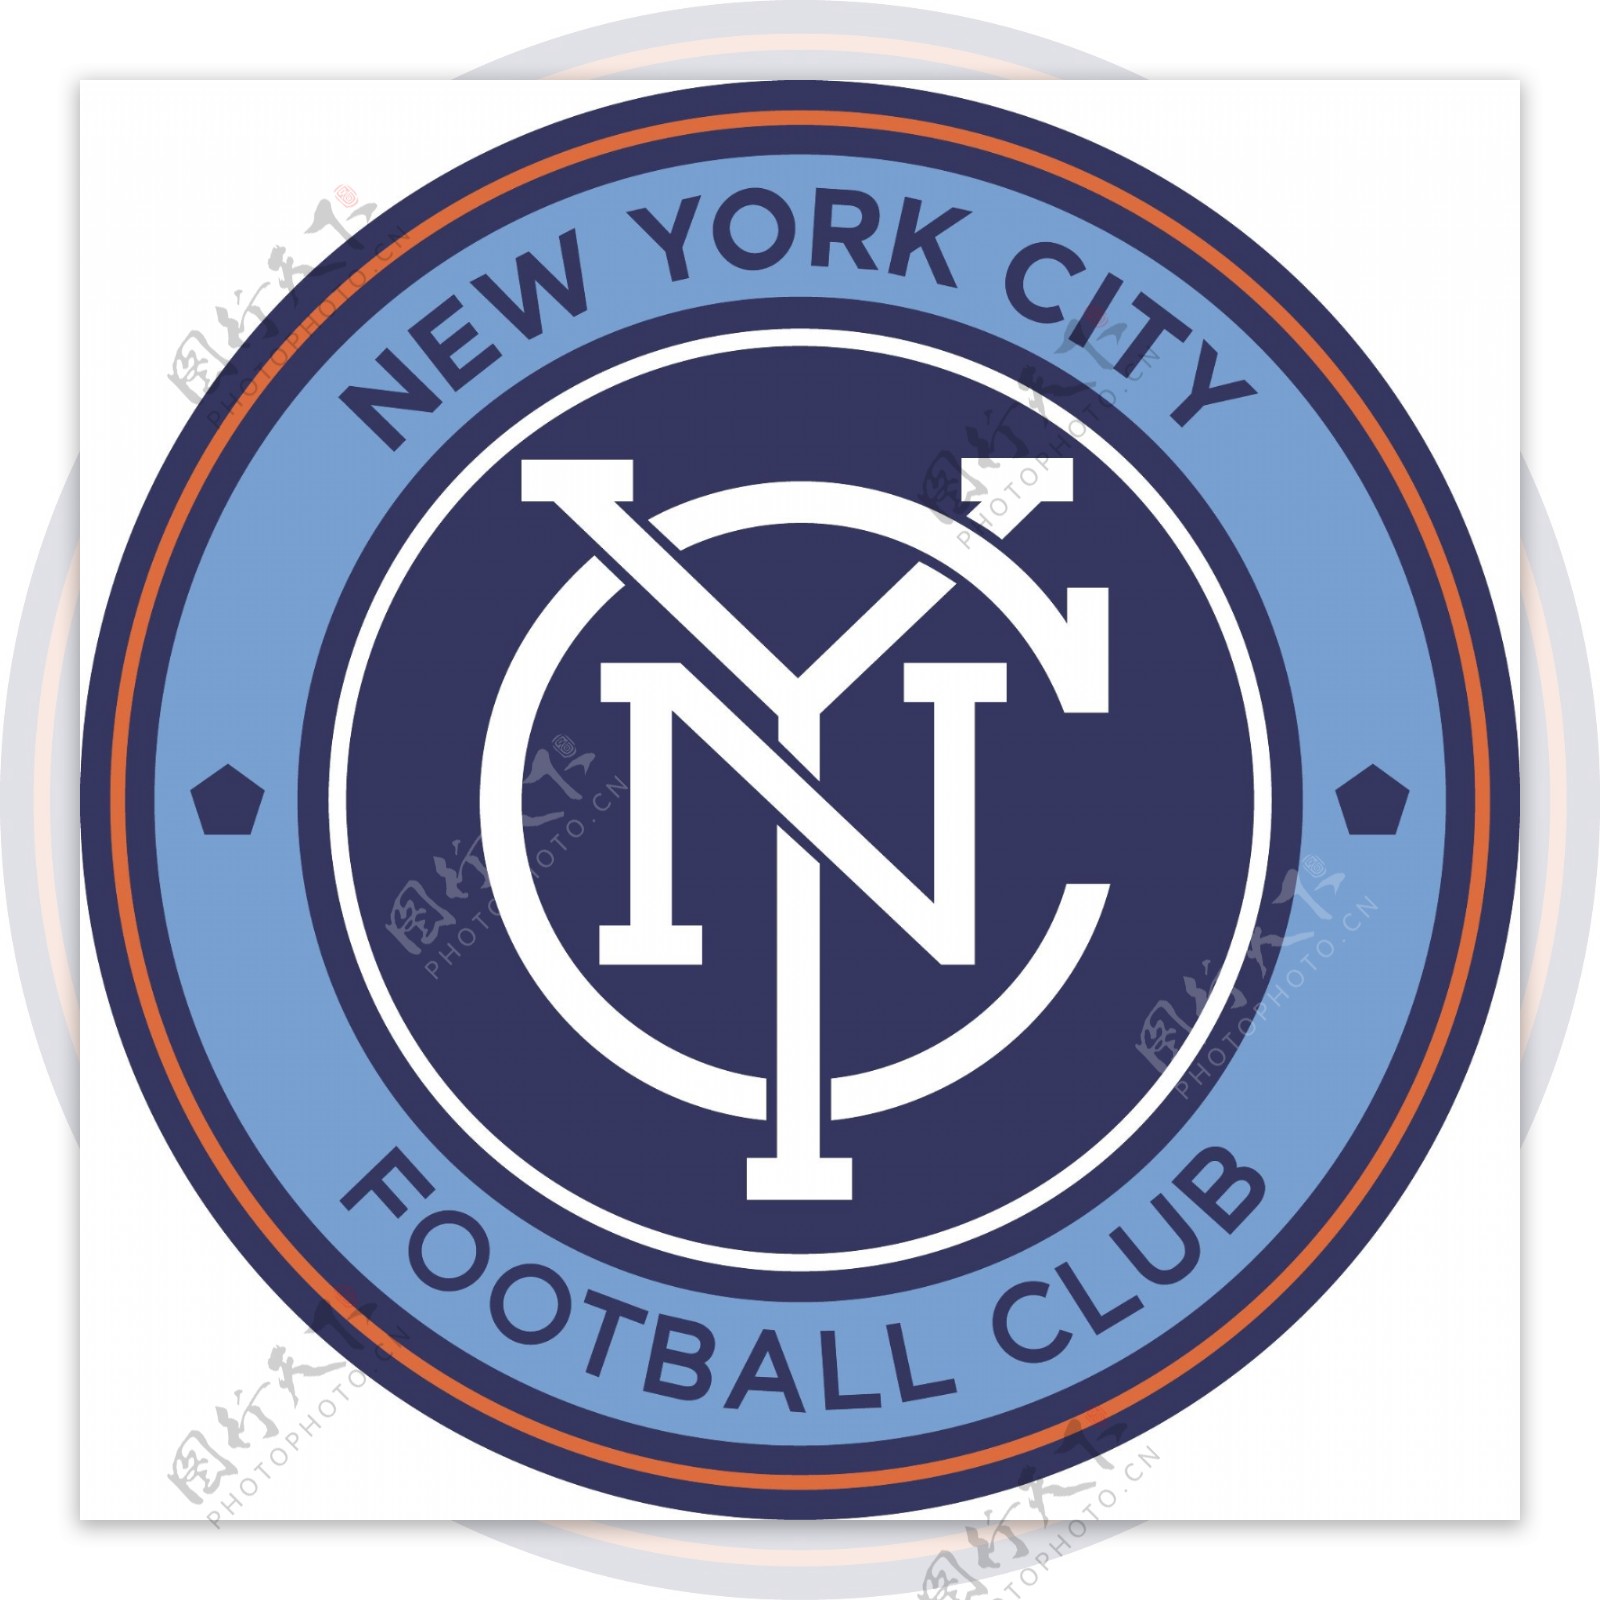 纽约城足球俱乐部徽标图片